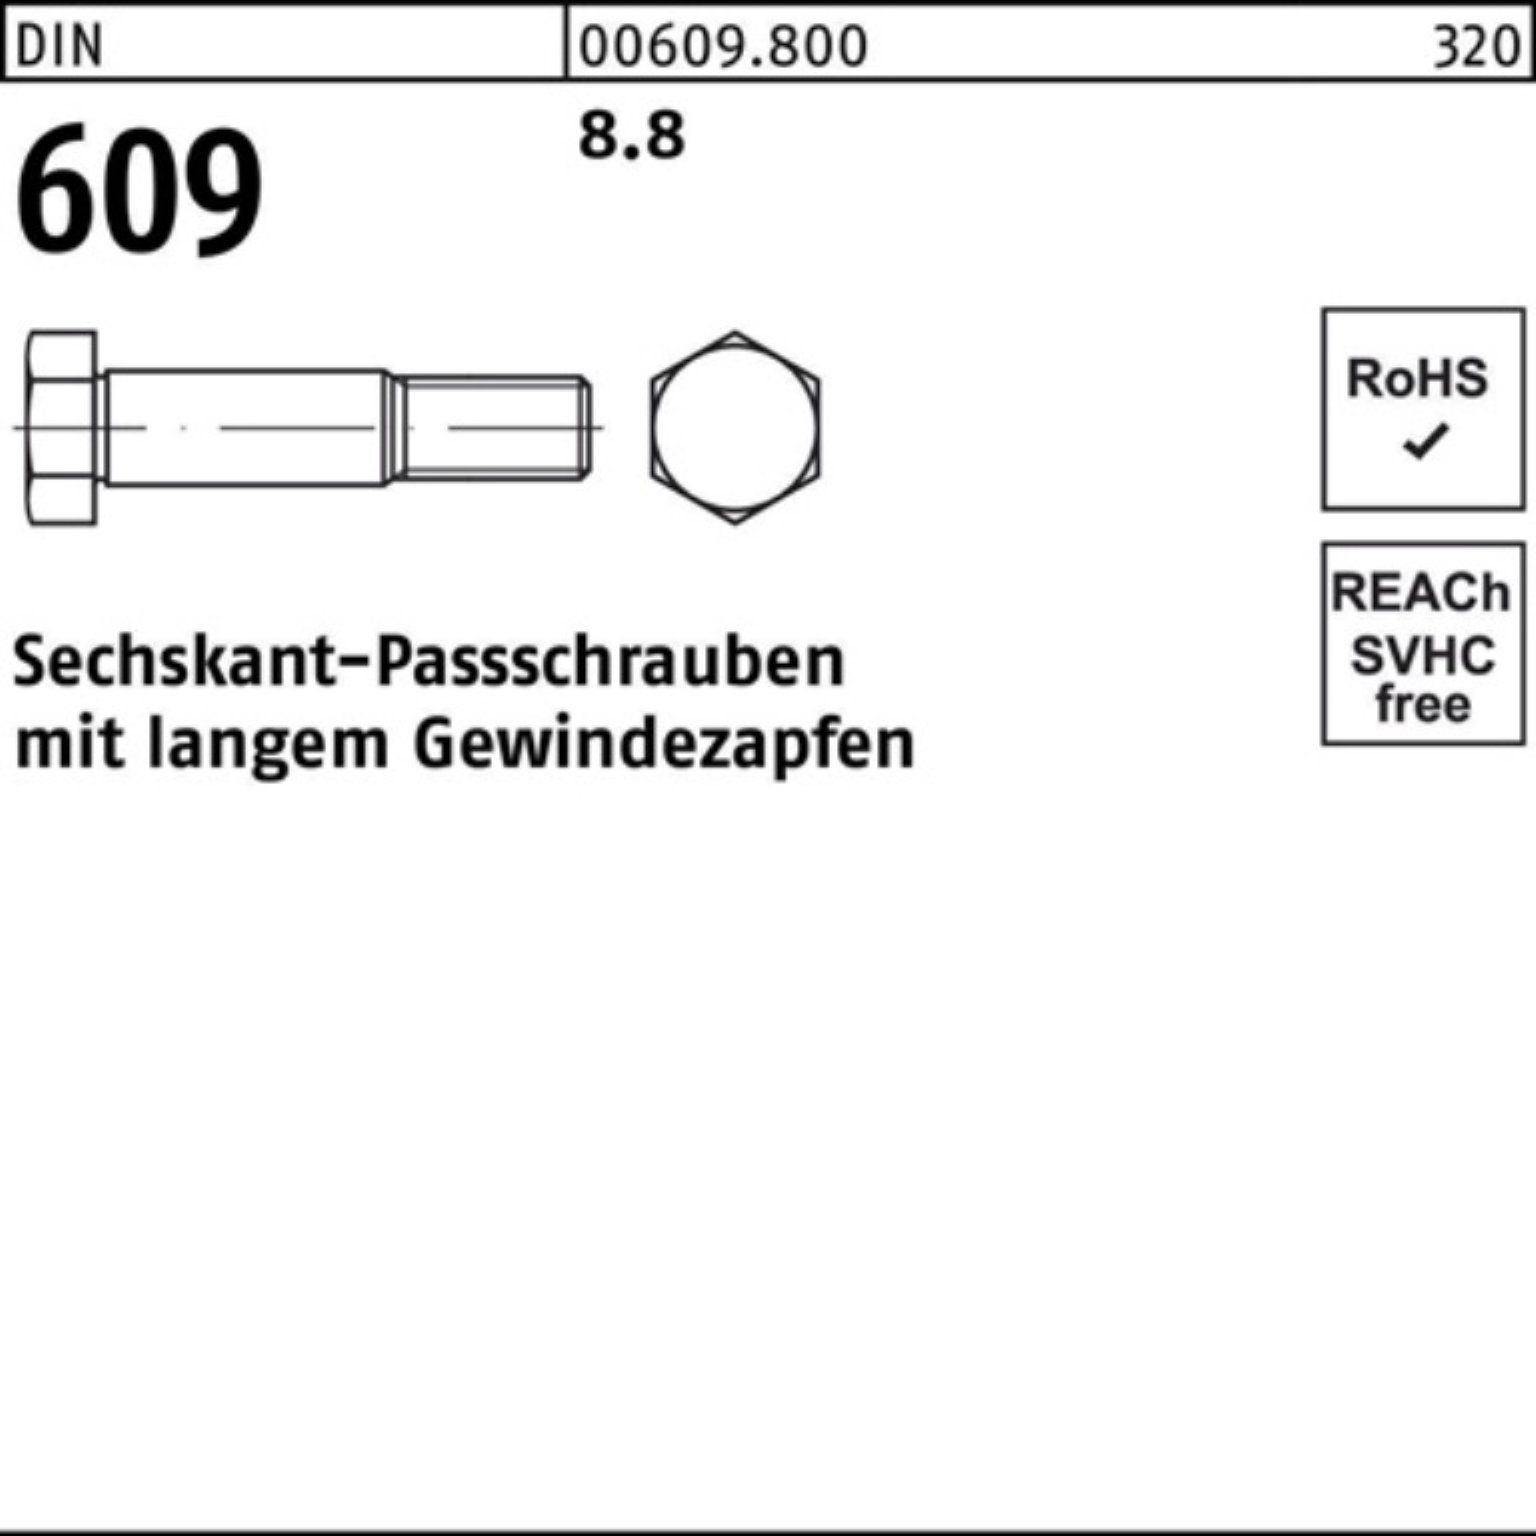 M20x langem 609 Sechskantpassschraube Pack Gewindezapfen Reyher 100er DIN Schraube 160